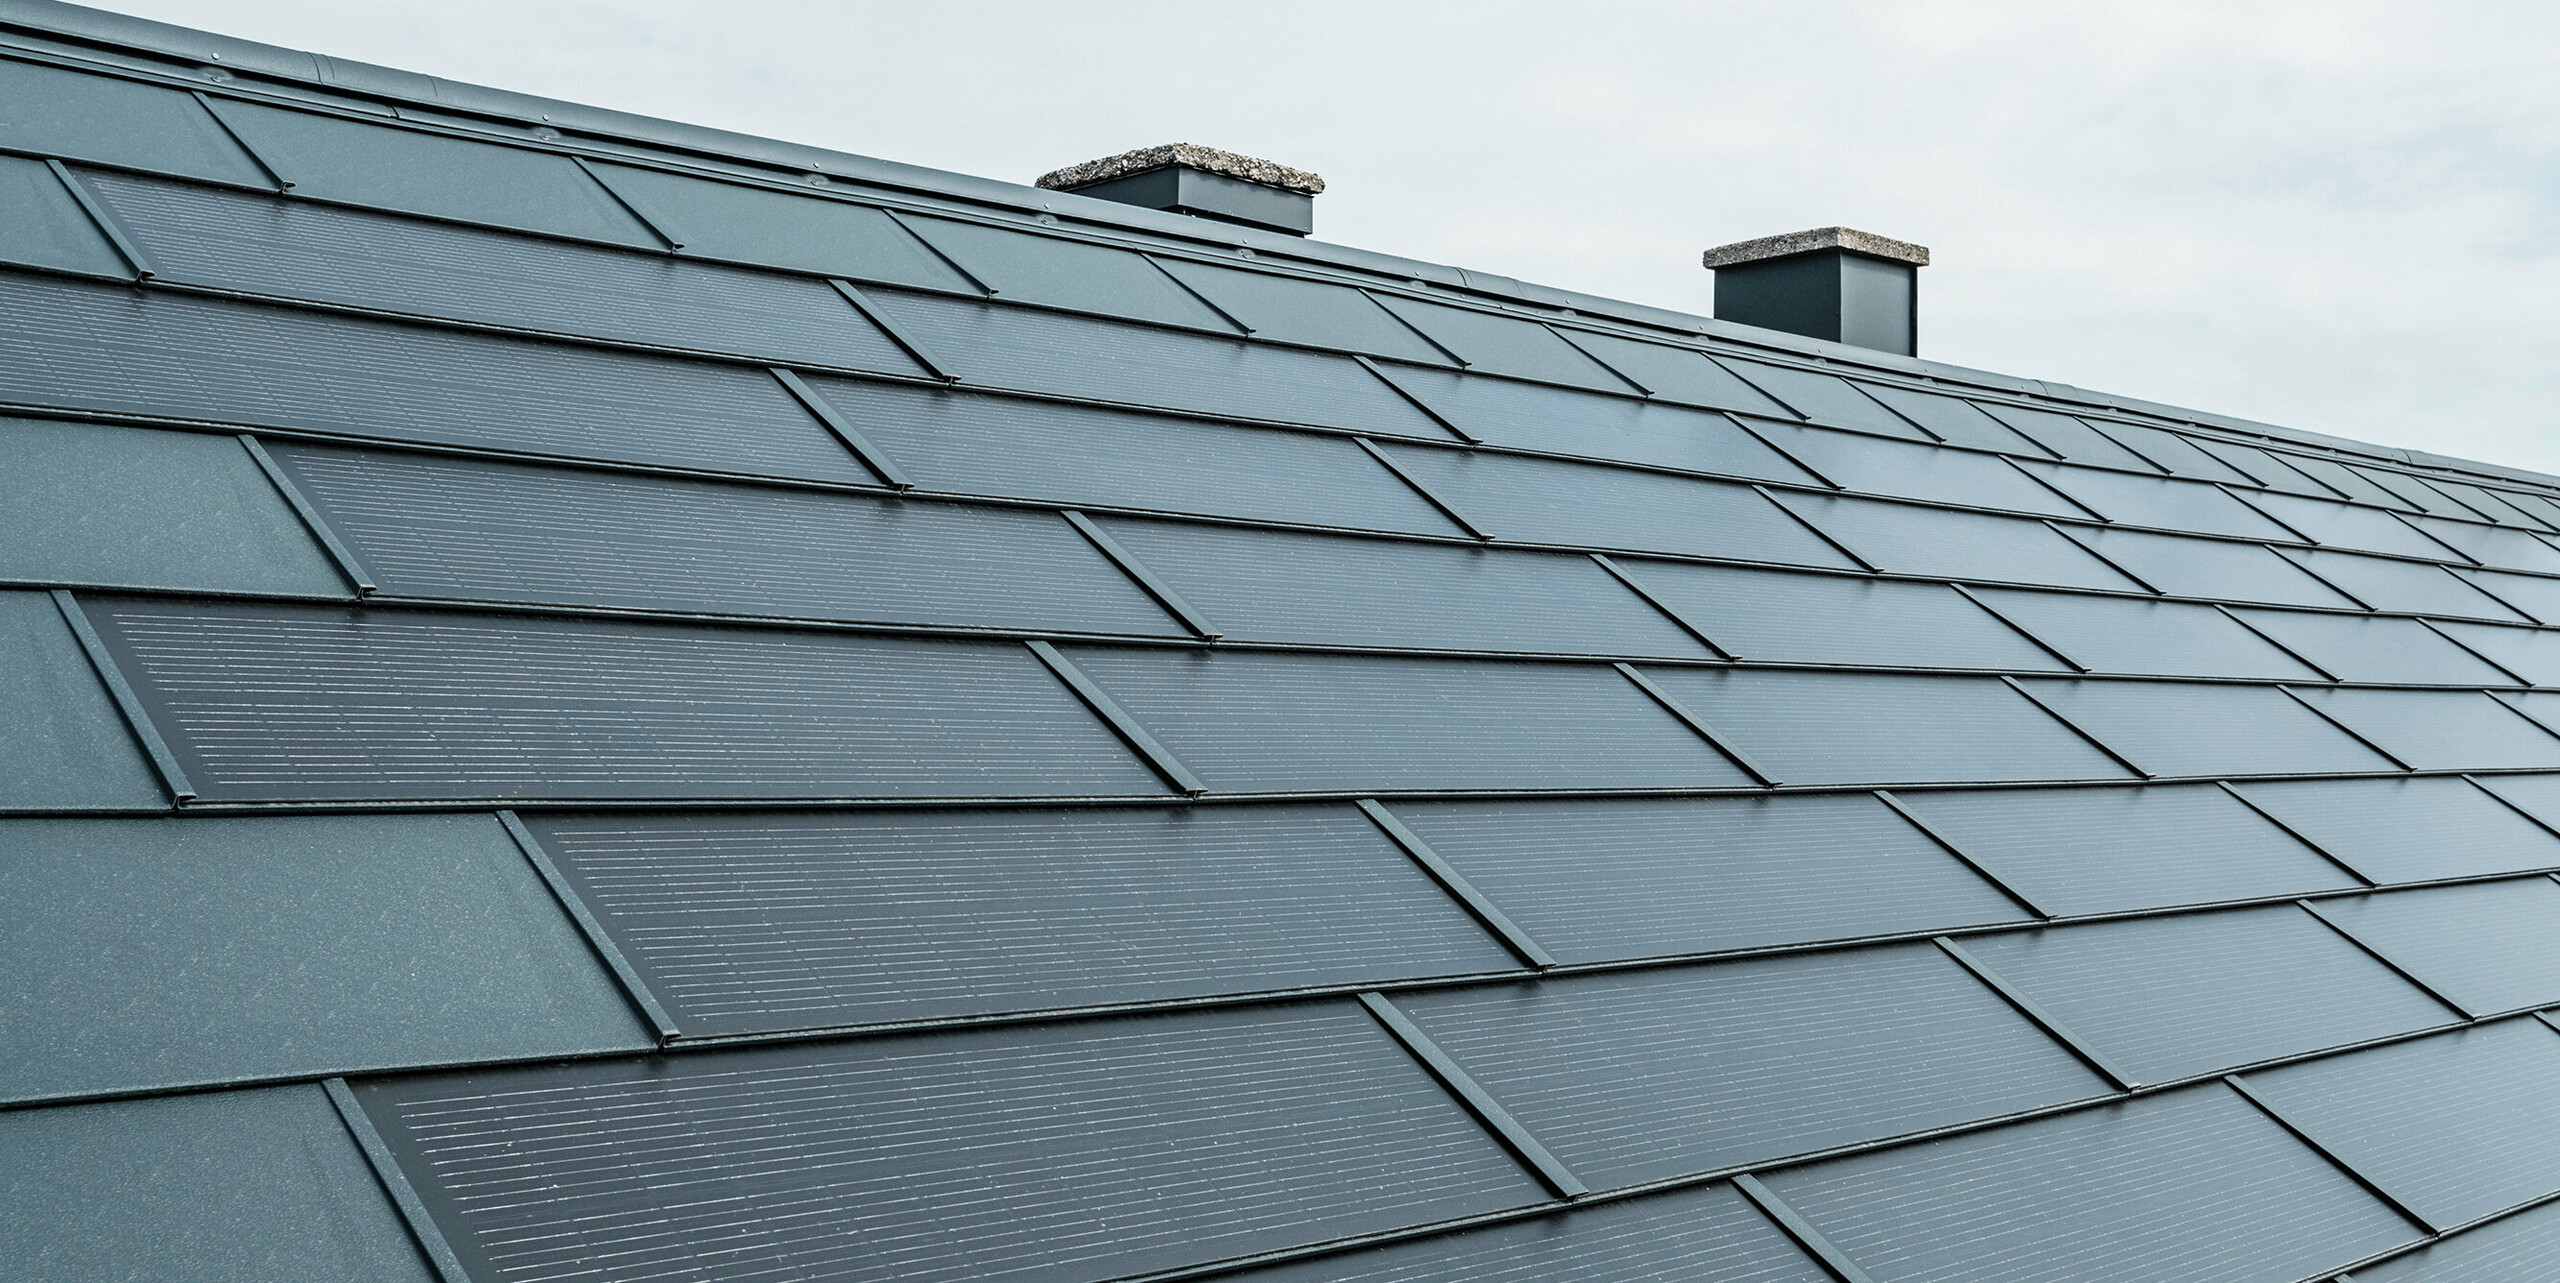 Perspektivni pogled na streho, opremljeno s PREFA solarnimi strešnimi ploščami v antracitni barvi. Plošče so natančno položene in zaradi vgrajenih fotovoltaičnih celic ponujajo inovativno rešitev za pridobivanje energije. V ozadju se dvigata dva dimnika, ki ju prekinja oblačno nebo, kar poudarja kombinacijo tradicionalne strešne arhitekture in sodobne sončne tehnologije.